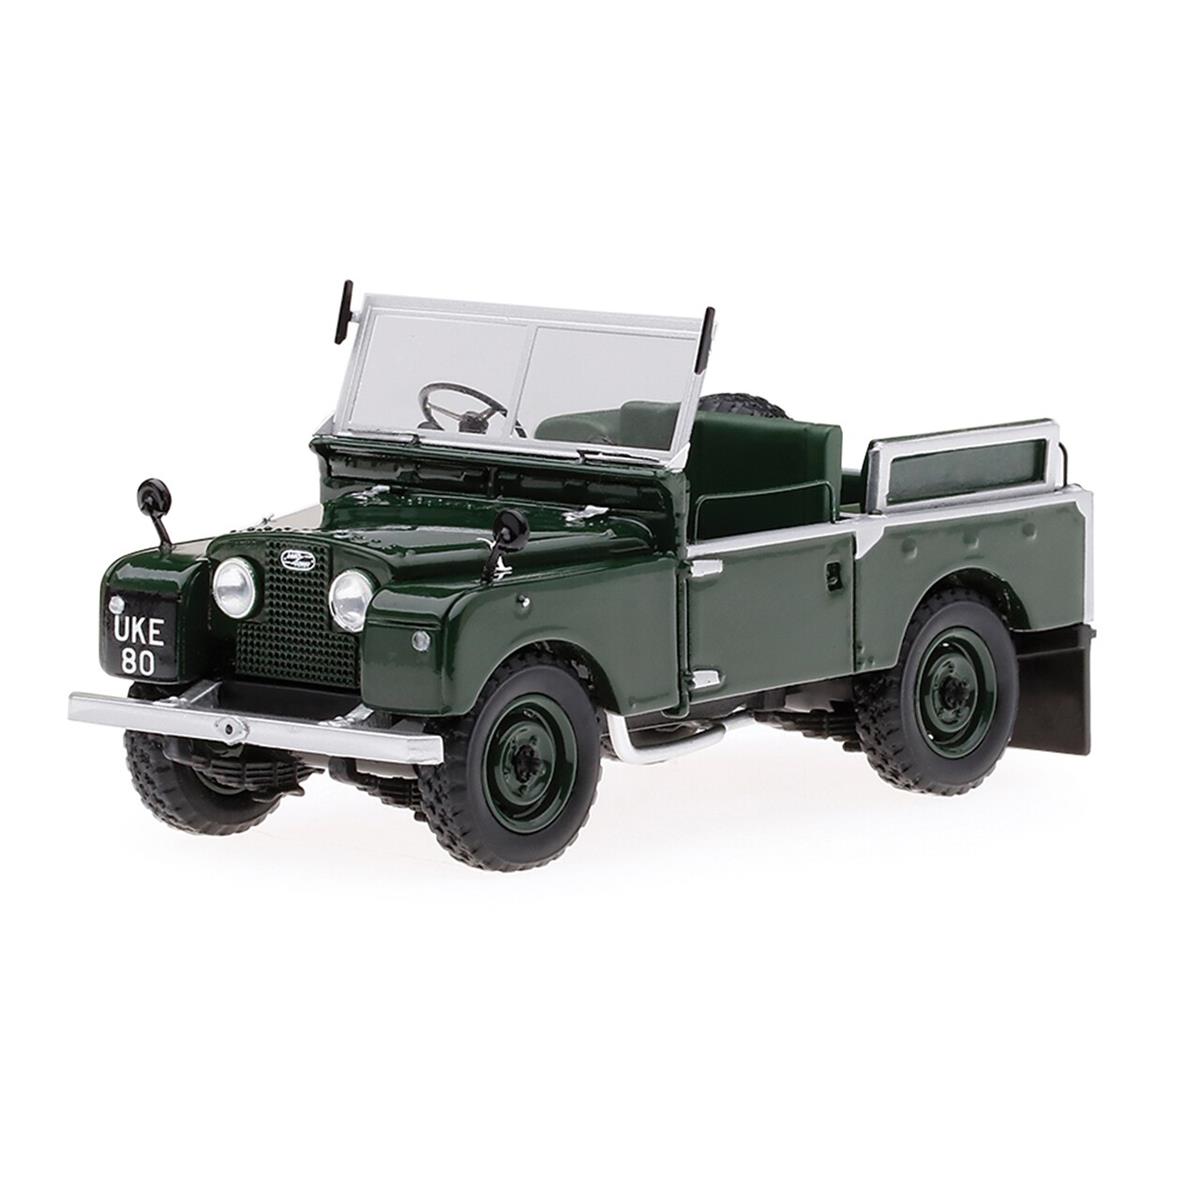 TSM 1954 Winston Churchill Land Rover Series I 1/43 スケール | ダイキャストカー ダイキャスト 車のおもちゃ 車 おもちゃ コレクション ミニチュア ダイカスト モデルカー ミニカー アメ車 ギフト プレゼント